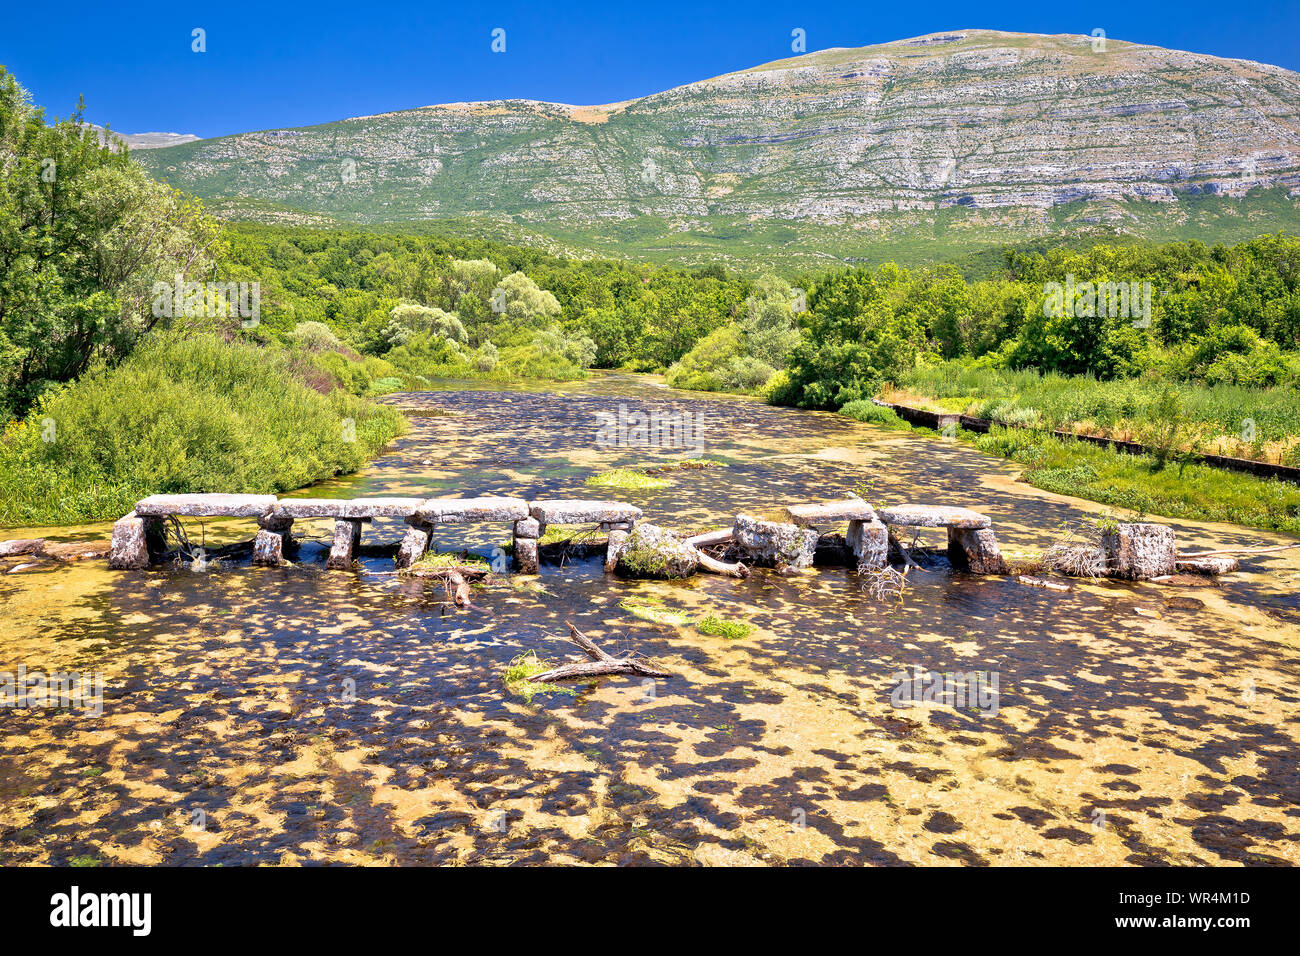 Der Fluss Cetina in der Nähe von Quelle old stone bridge View, Landschaft der dalmatinischen Zagora Region von Kroatien Stockfoto